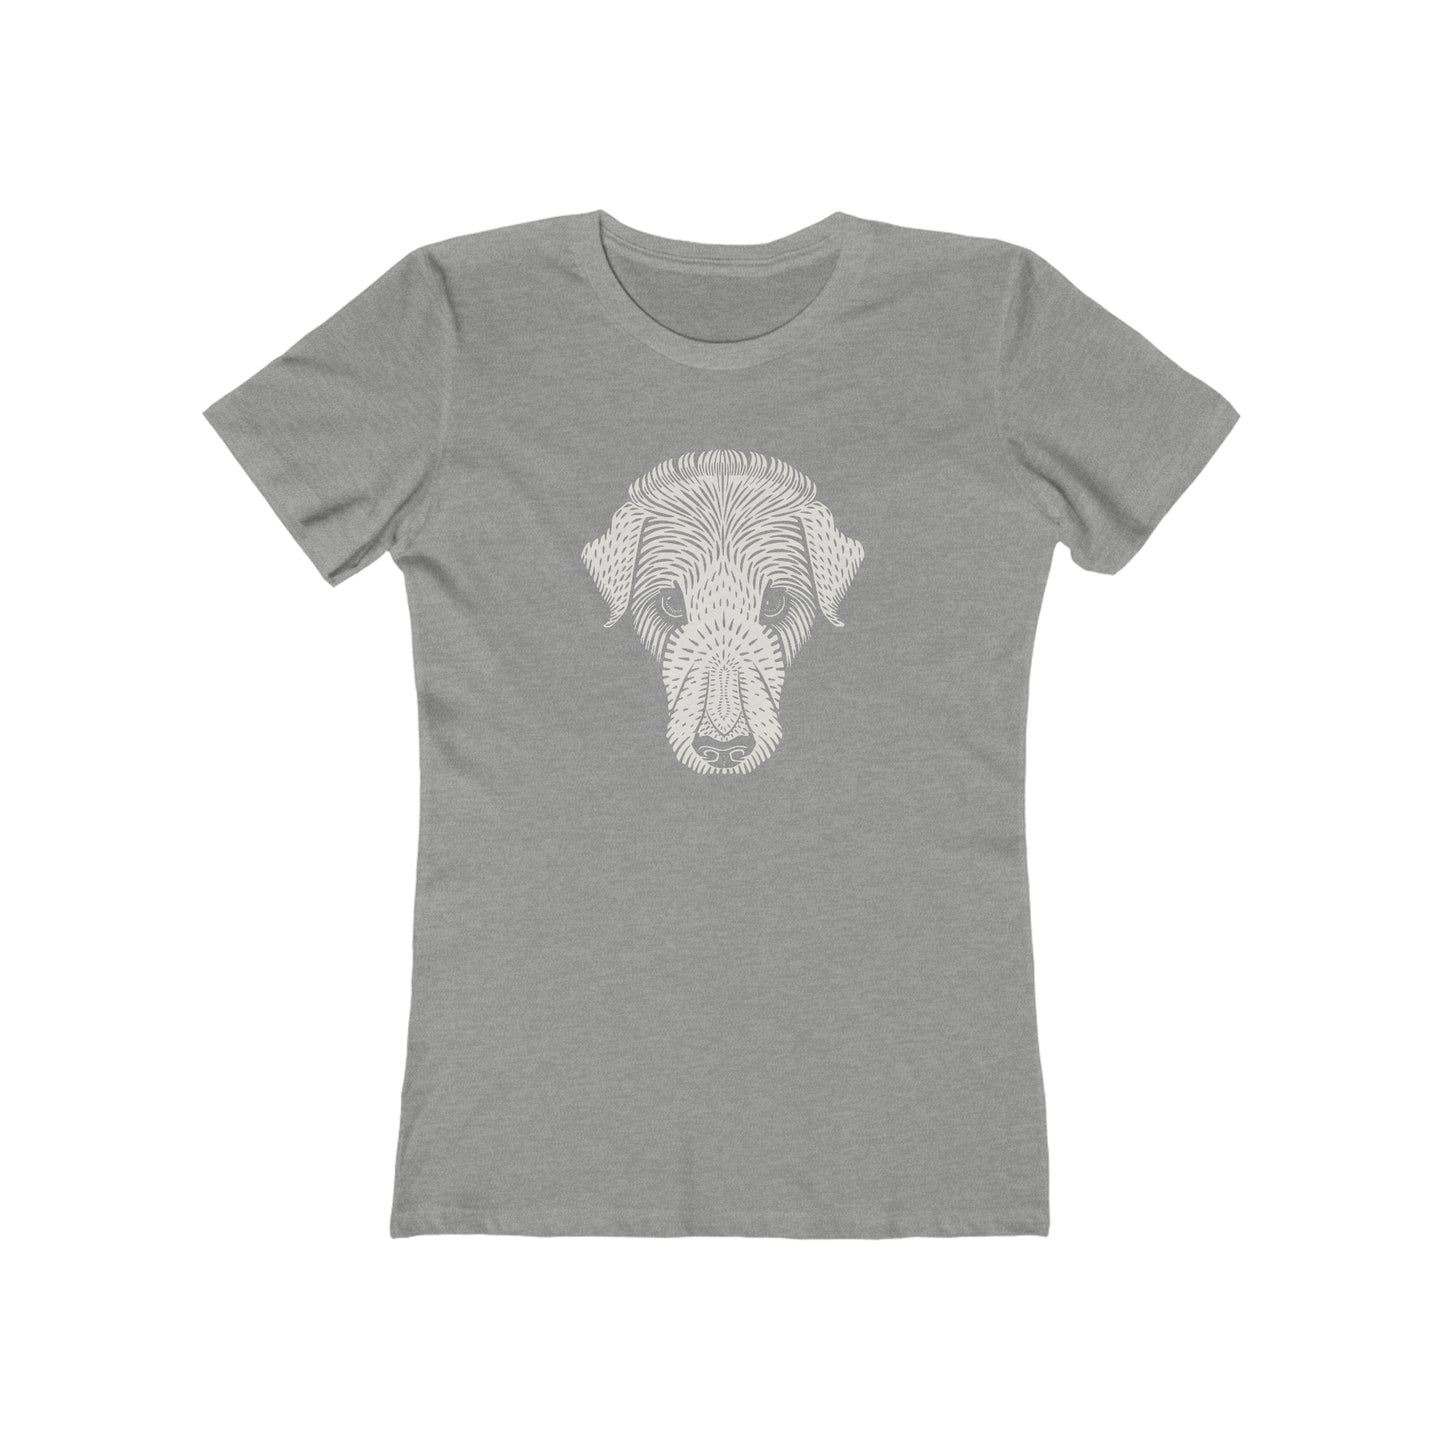 Dog Best Friend - Women's T-Shirt